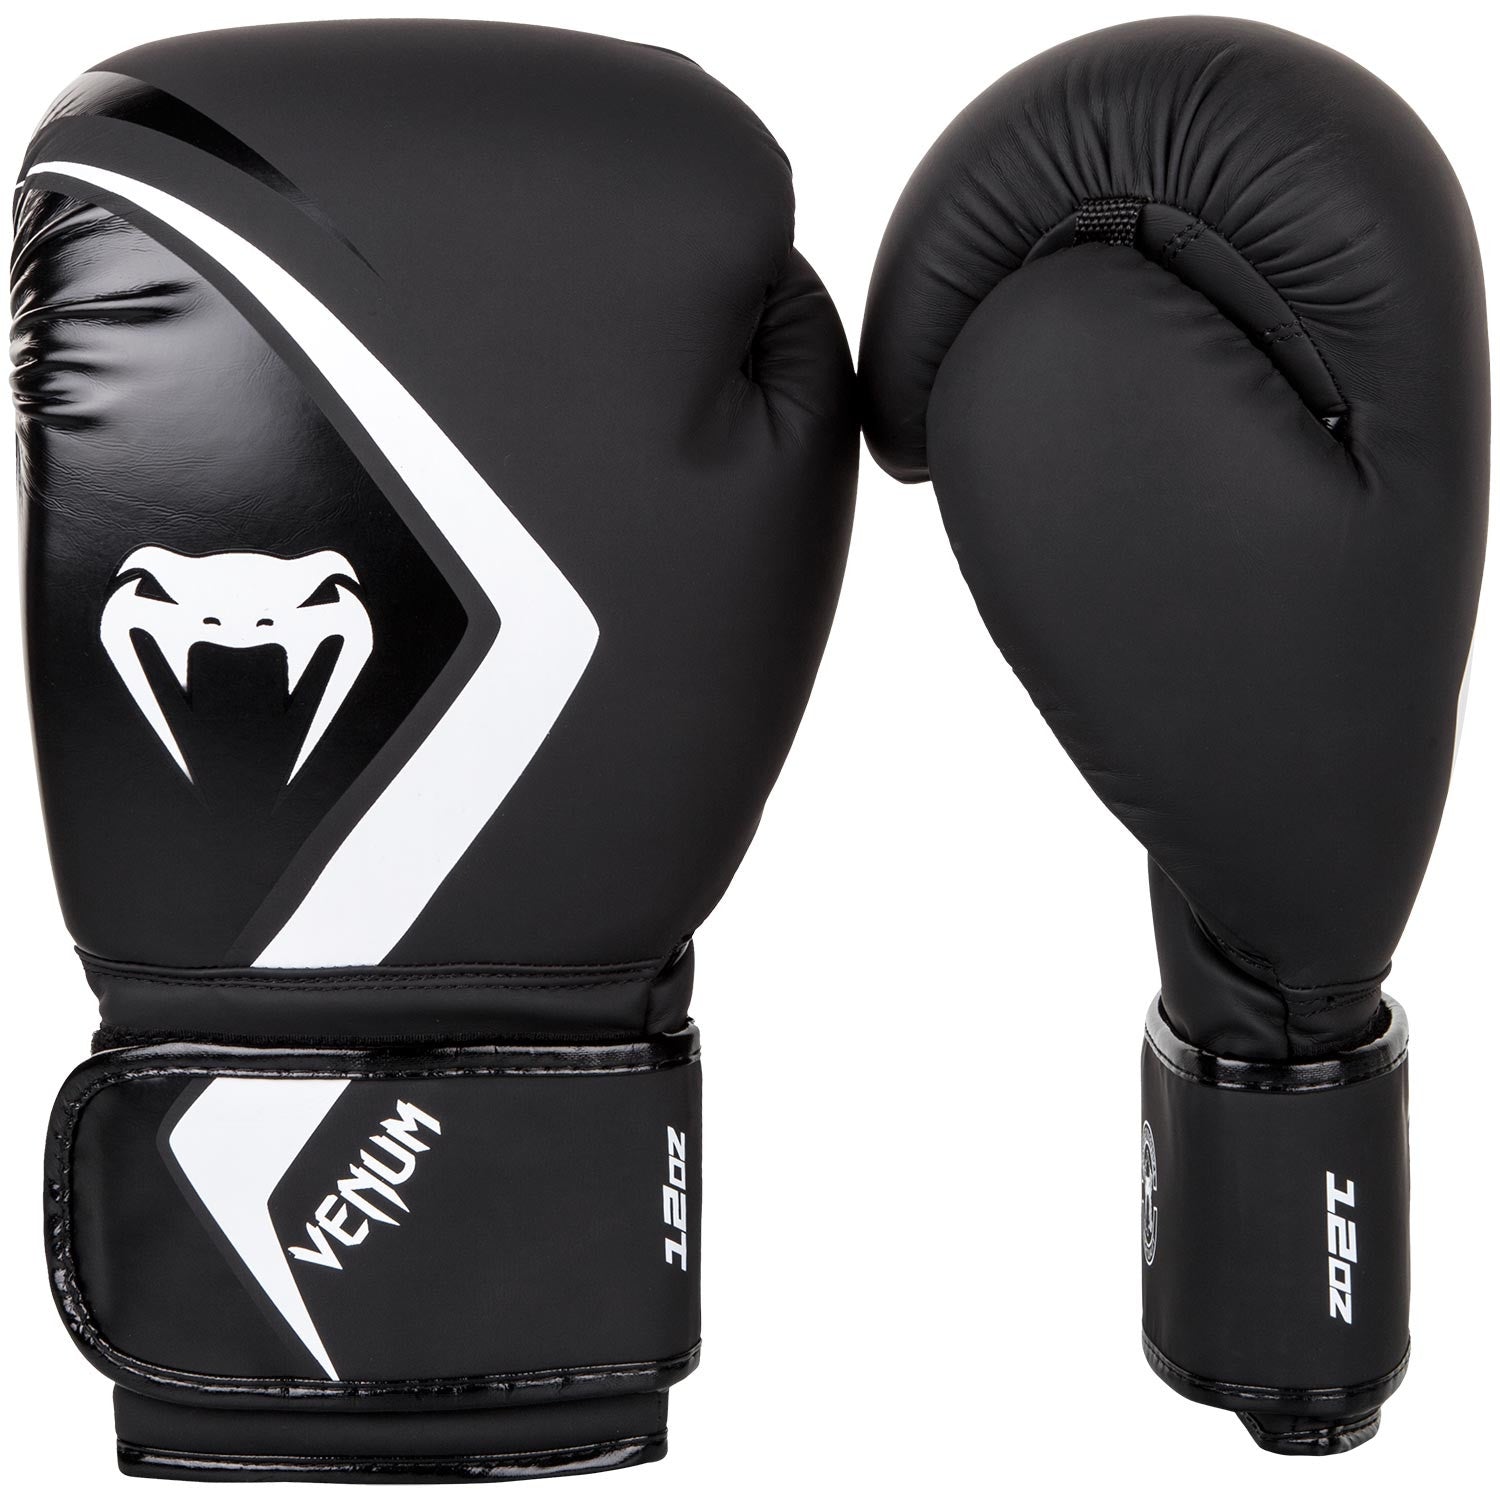 Venum Boxing Gloves Contender 2:0 - Black/White